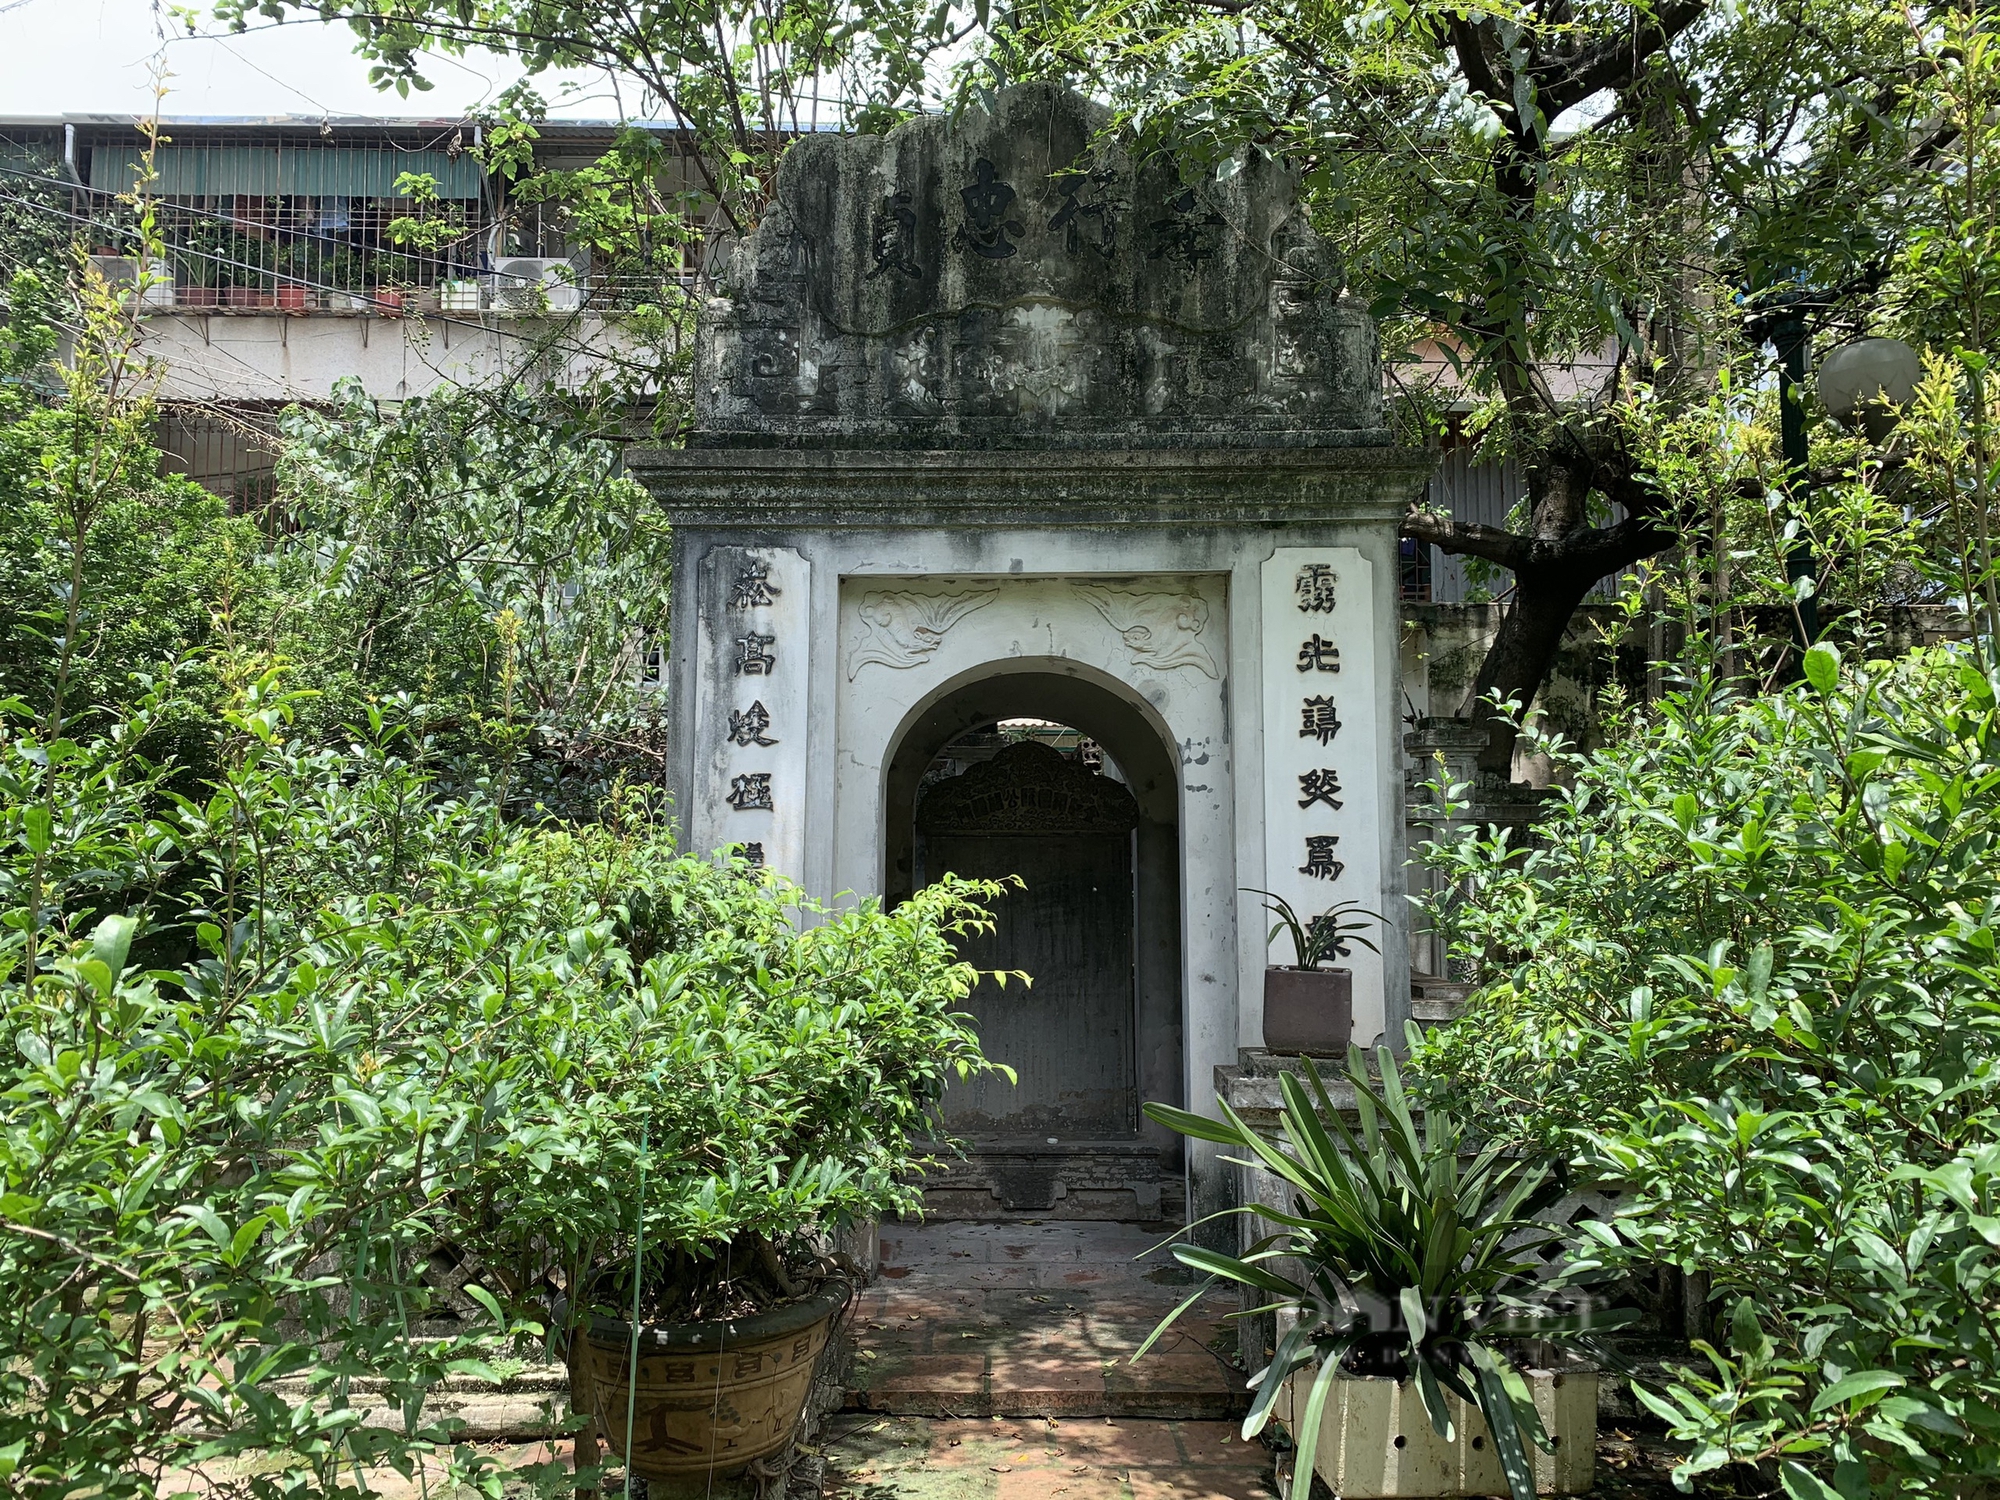 Kiến trúc độc đáo bên trong khu lăng mộ cổ trăm năm tuổi ở giữa lòng Thủ đô - Ảnh 5.